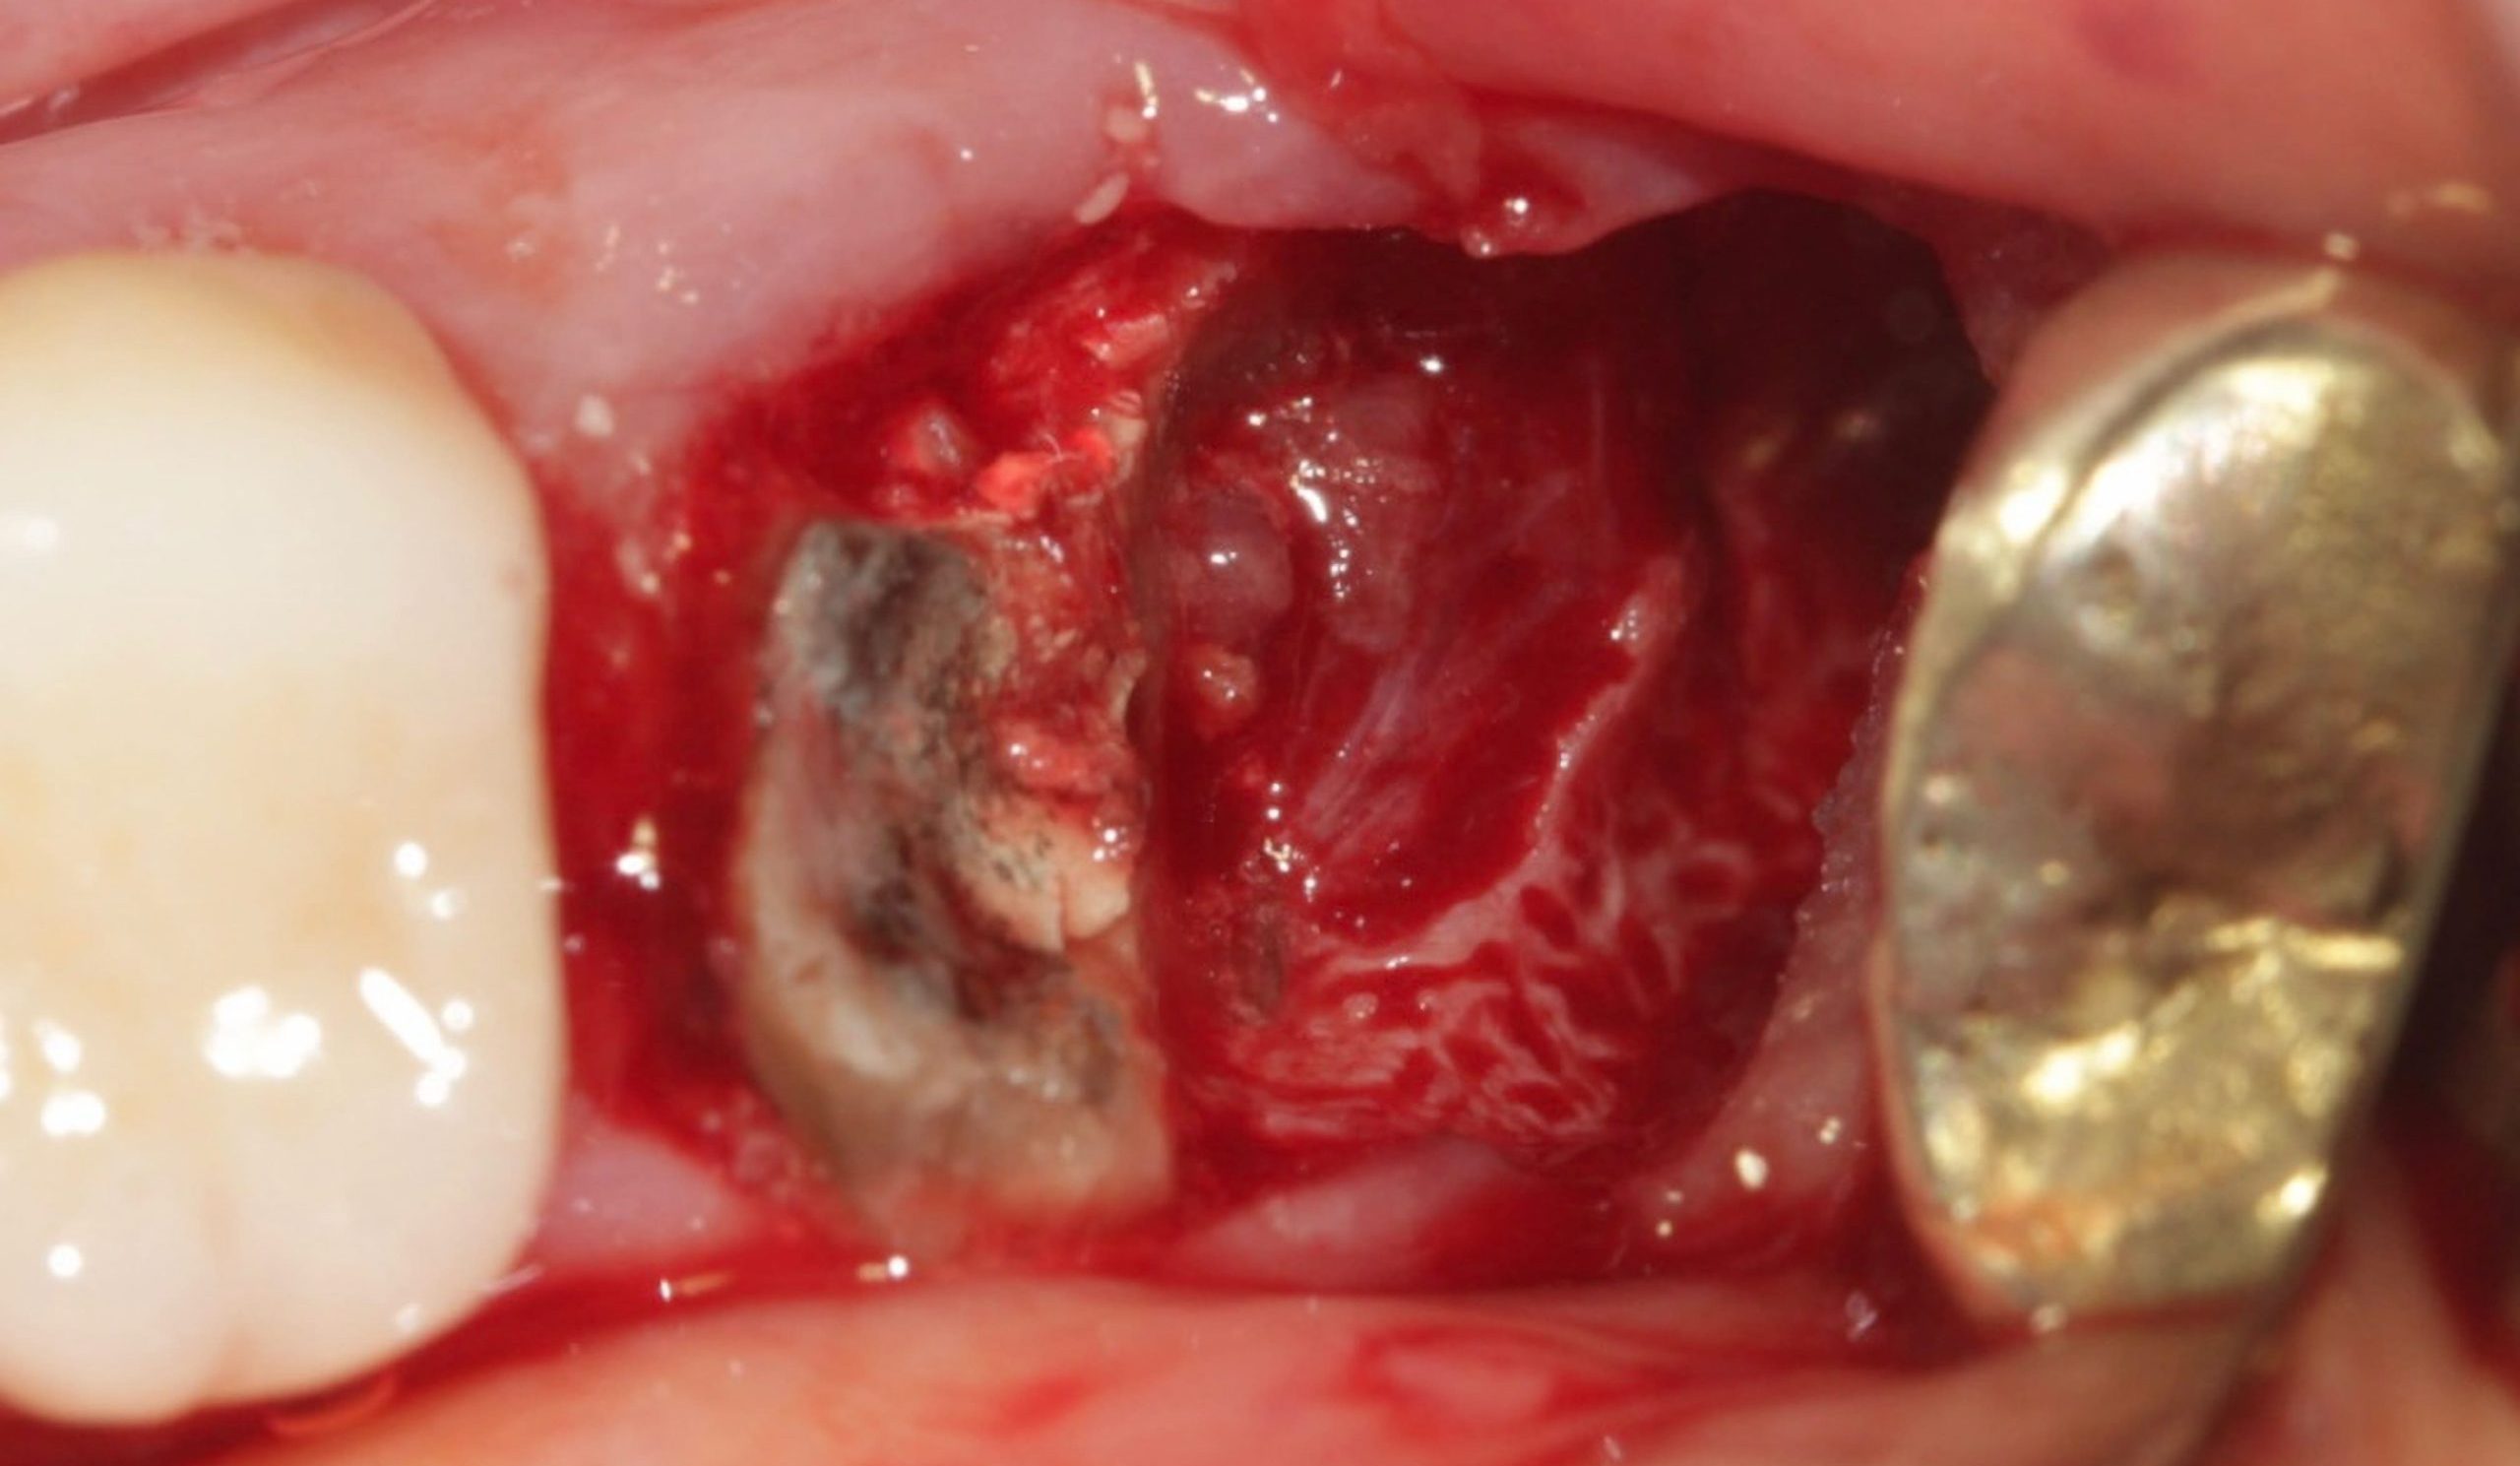 Rem raiz distal scaled e1705603326630 - Implante Imediato Arcsys em molar inferior